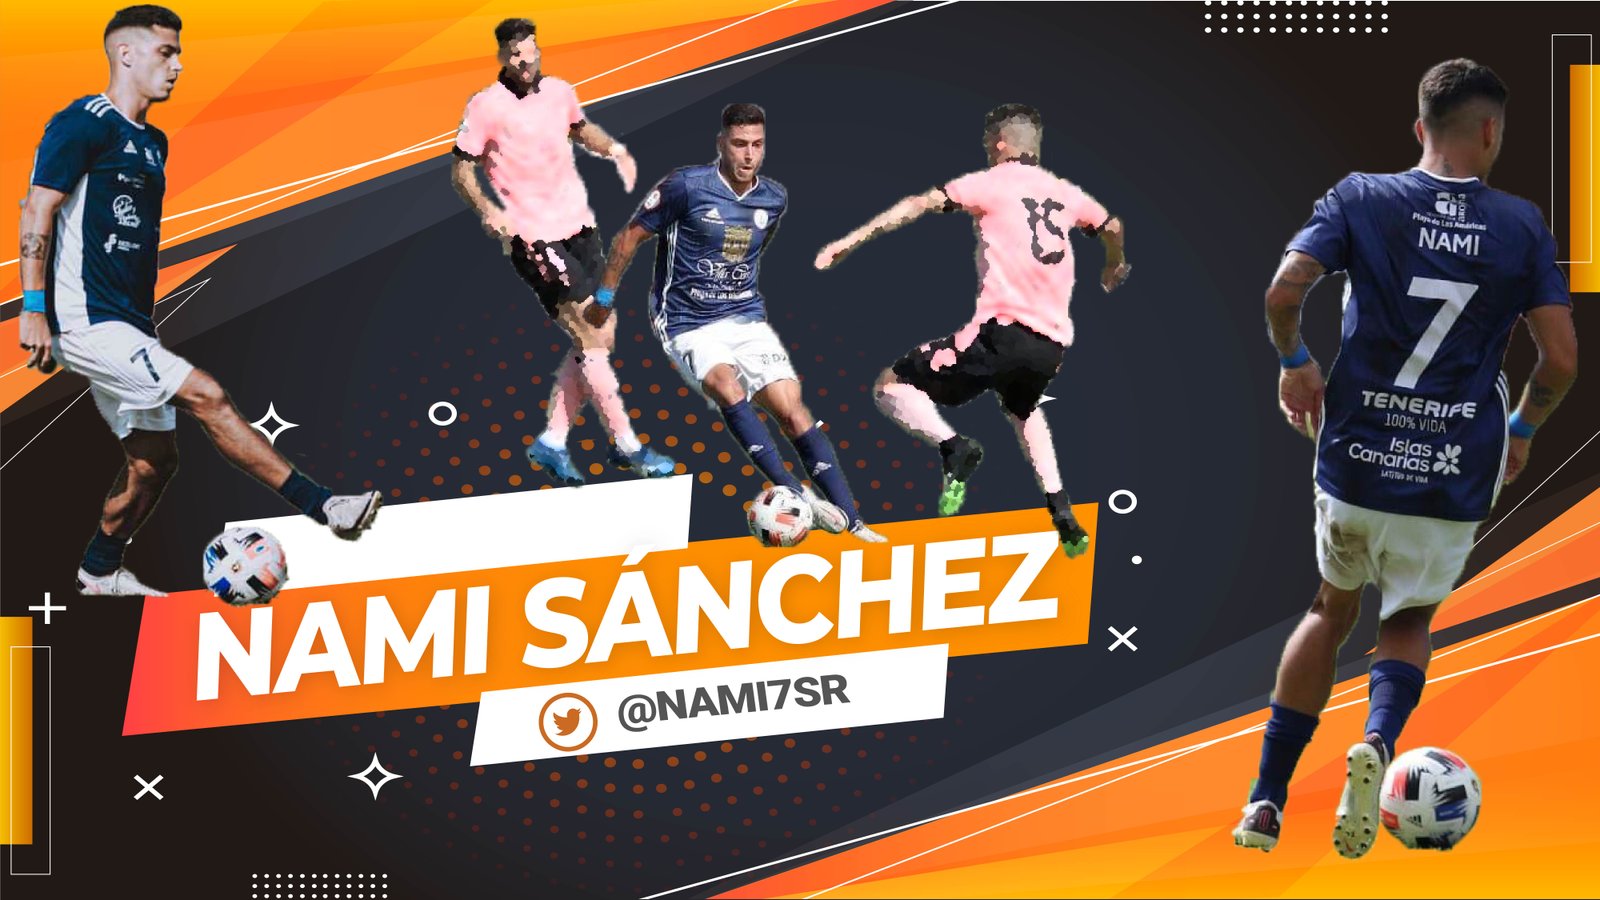 Highlights | Nami Sánchez – Temporada 2020/21